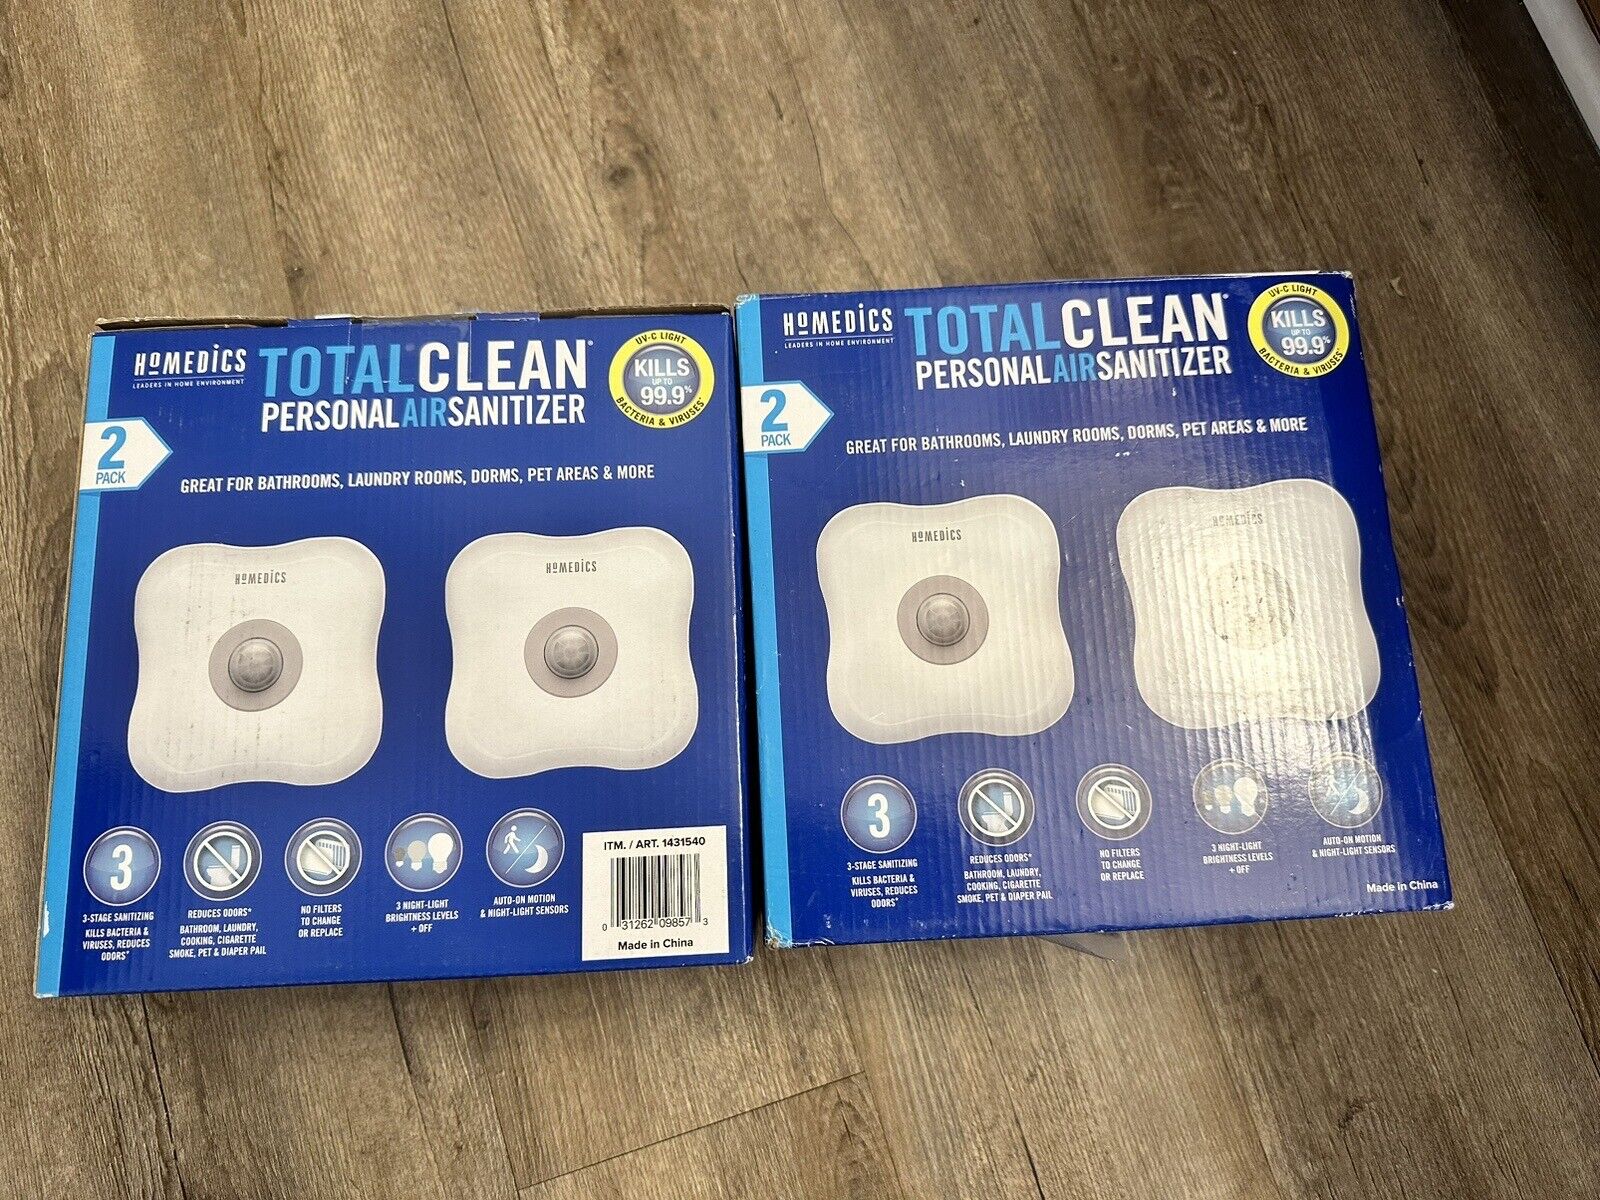 Home Medics Total Clean Personal Air Sanitizer